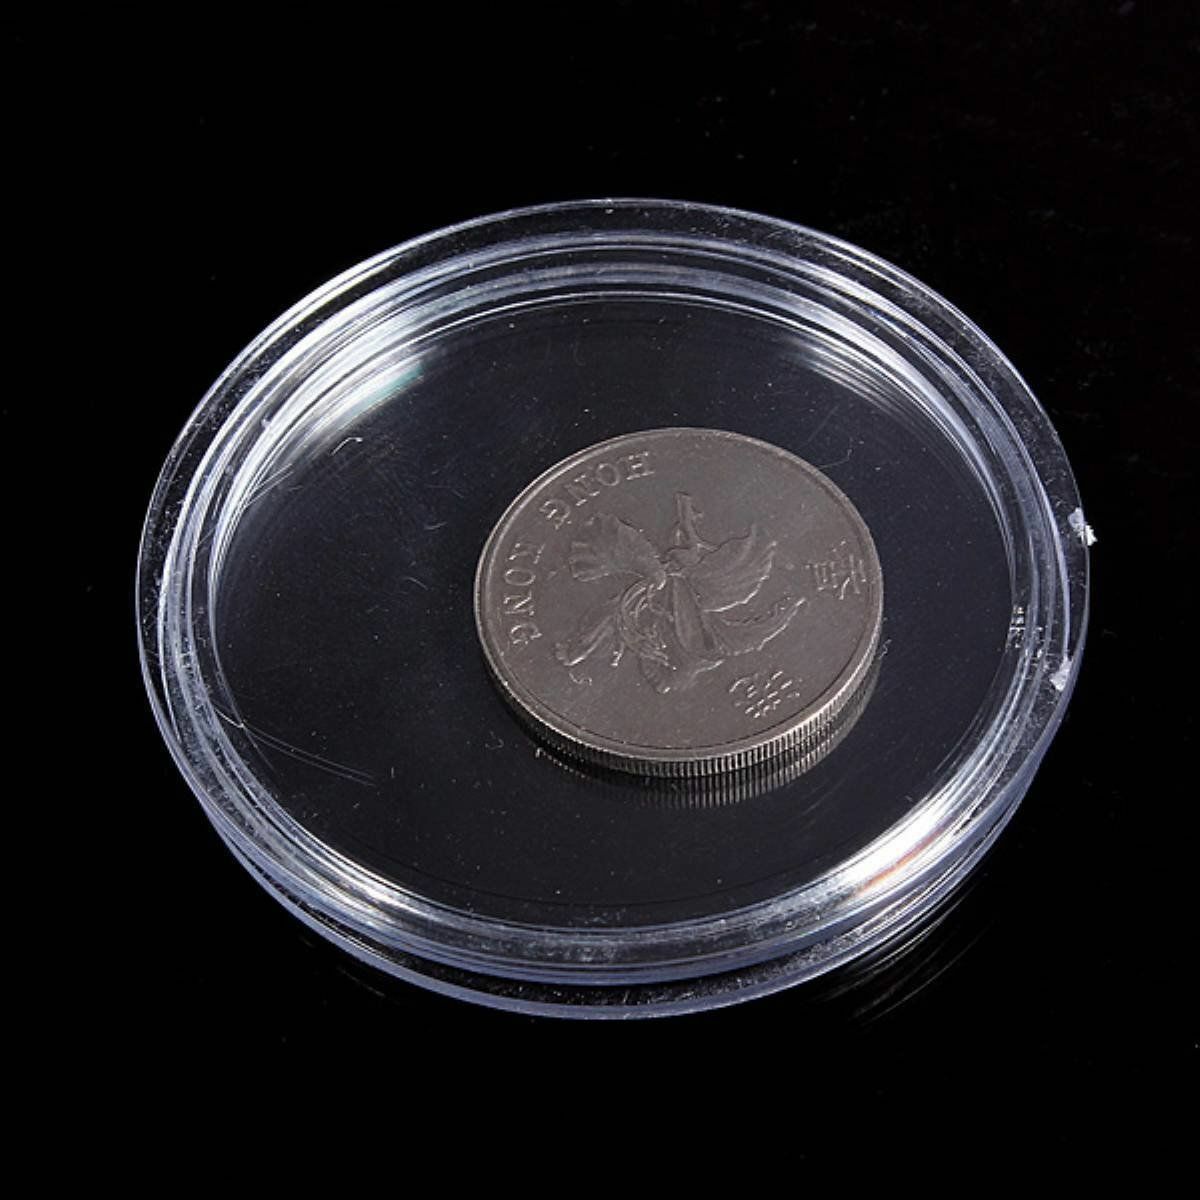 10 pcs Small round transparent plastic coin capsules box 21mm